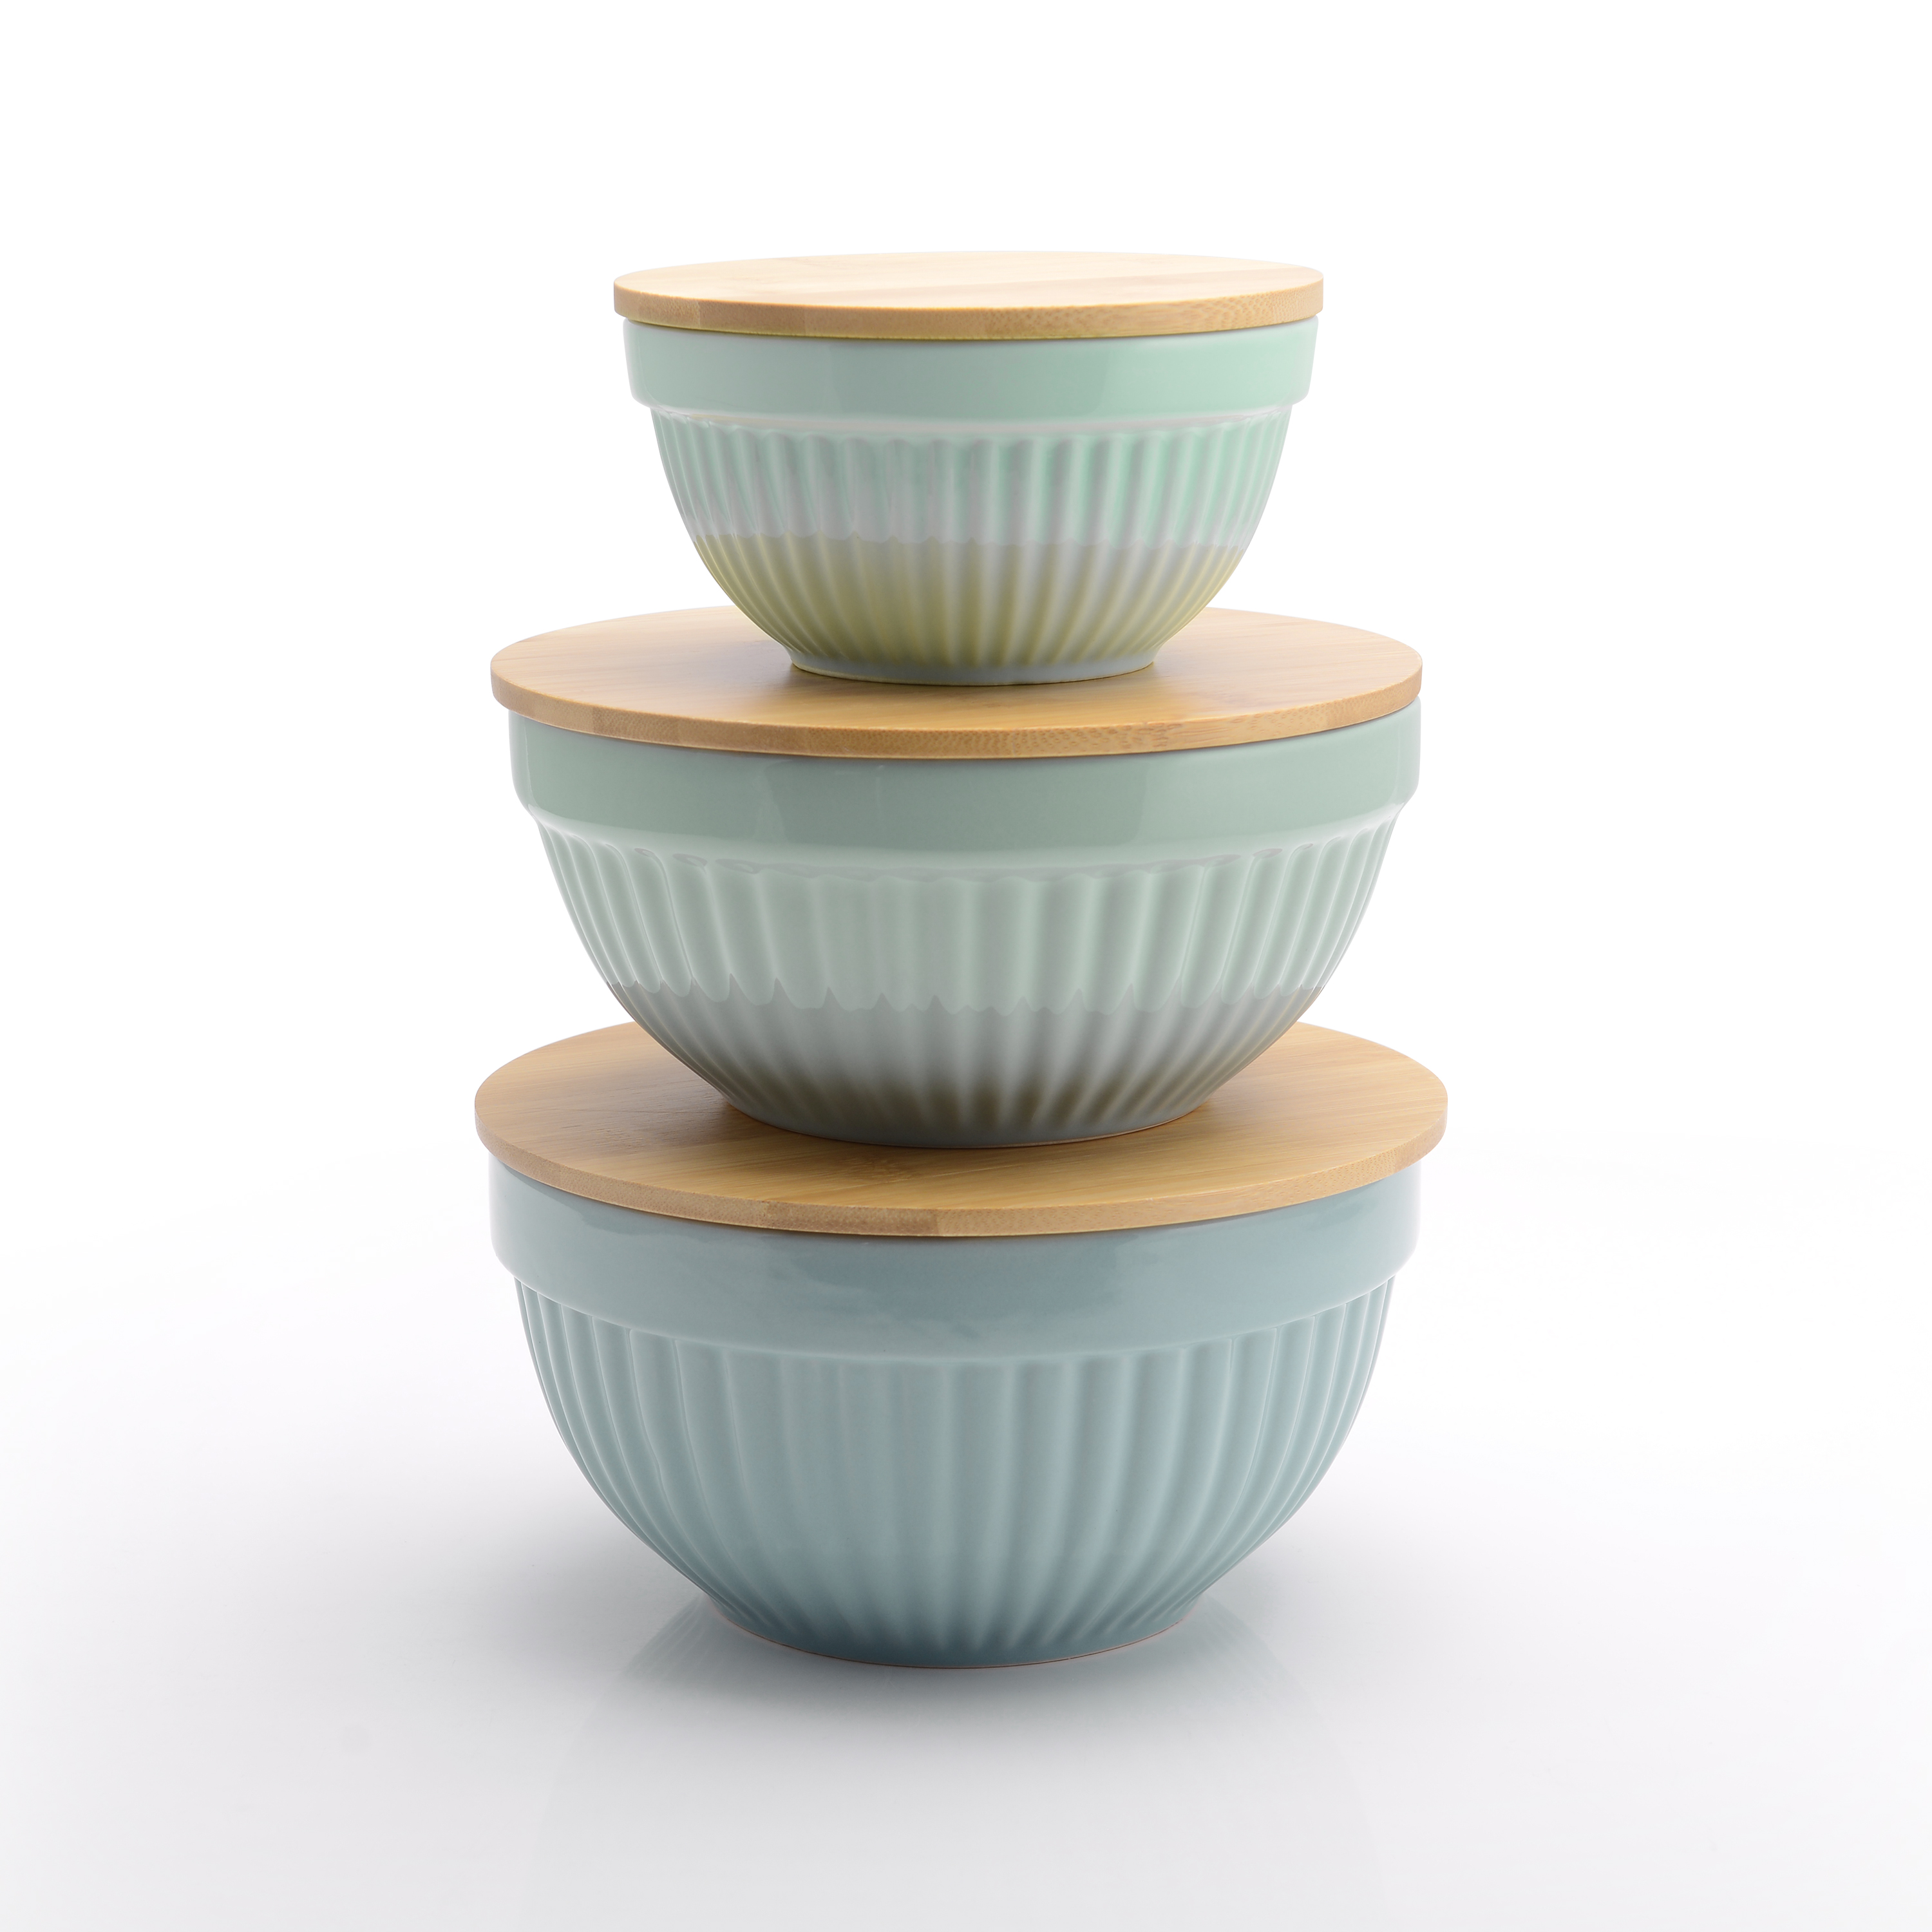 Better Homes & Gardens 3 Piece Ceramic Mixing Bowl Set, Aqua - image 2 of 8